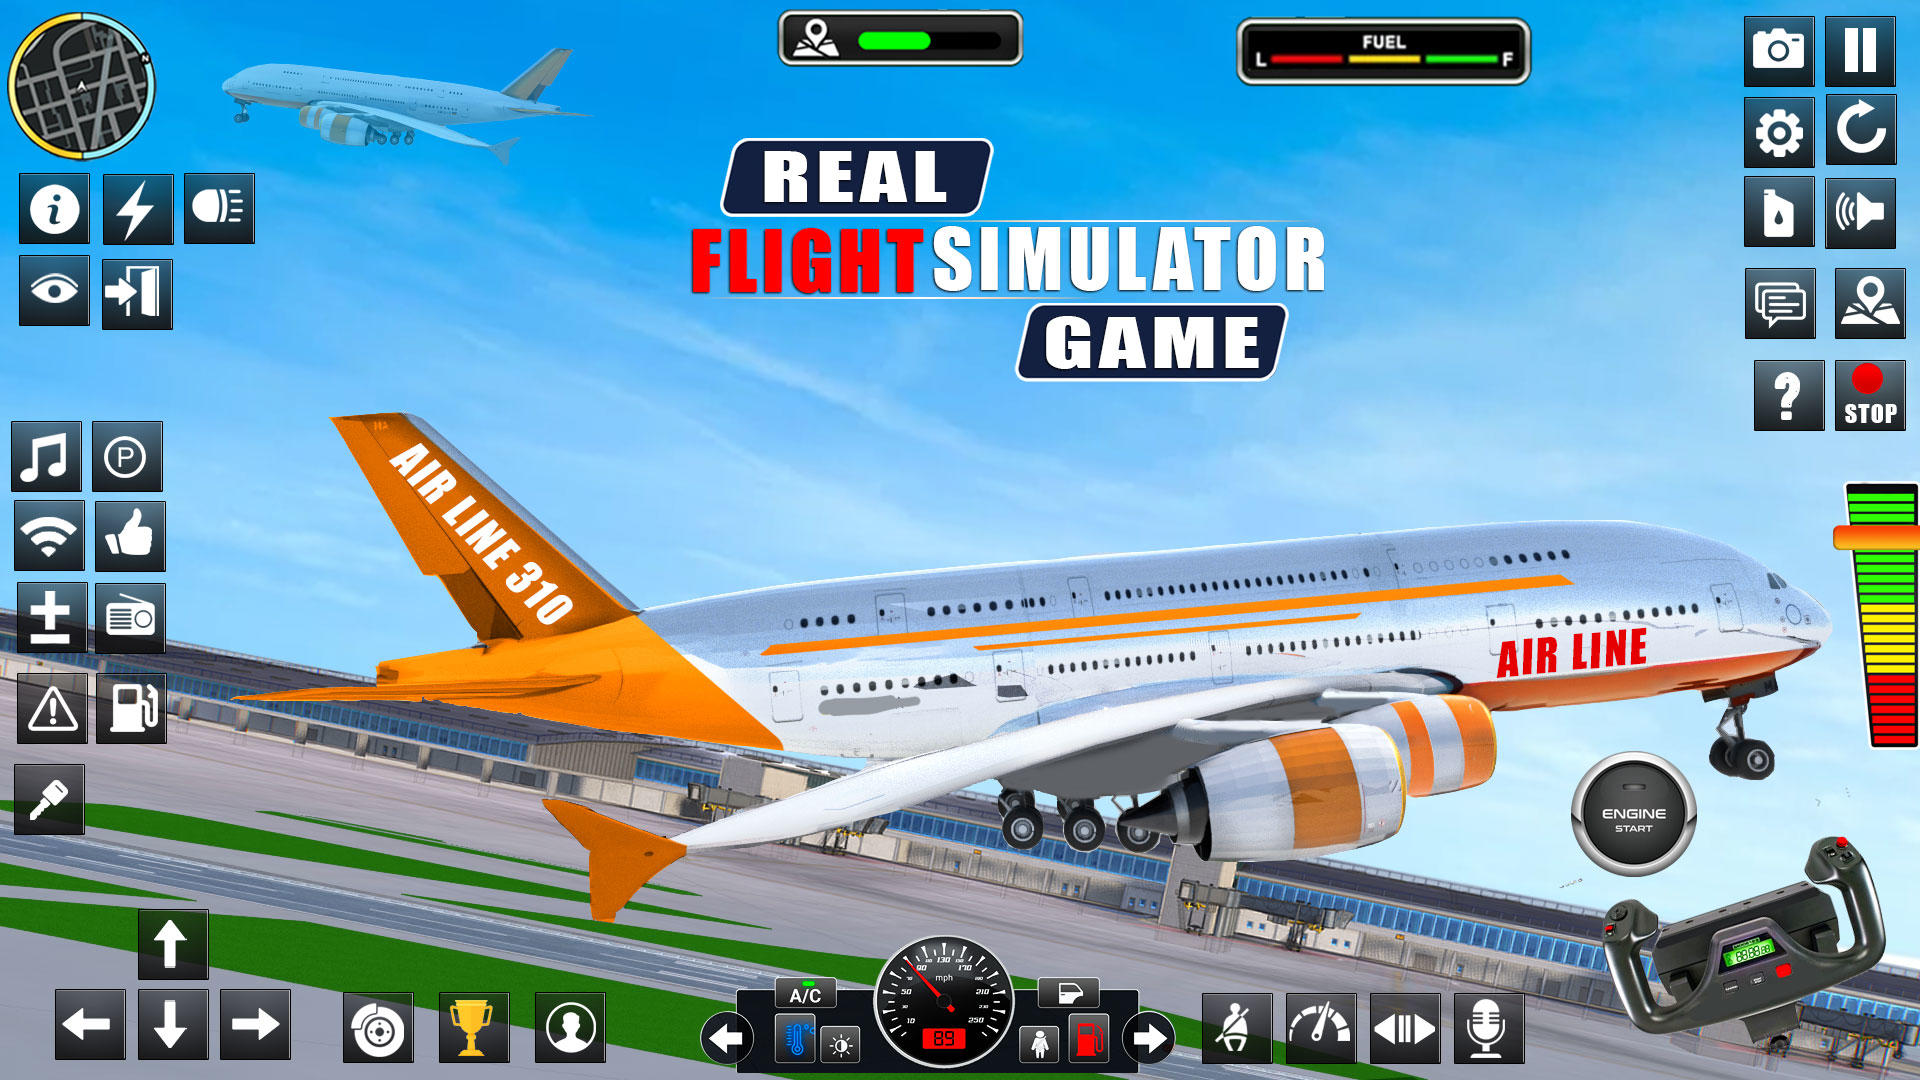 RFS - Real Flight Simulator - Apps on Google Play